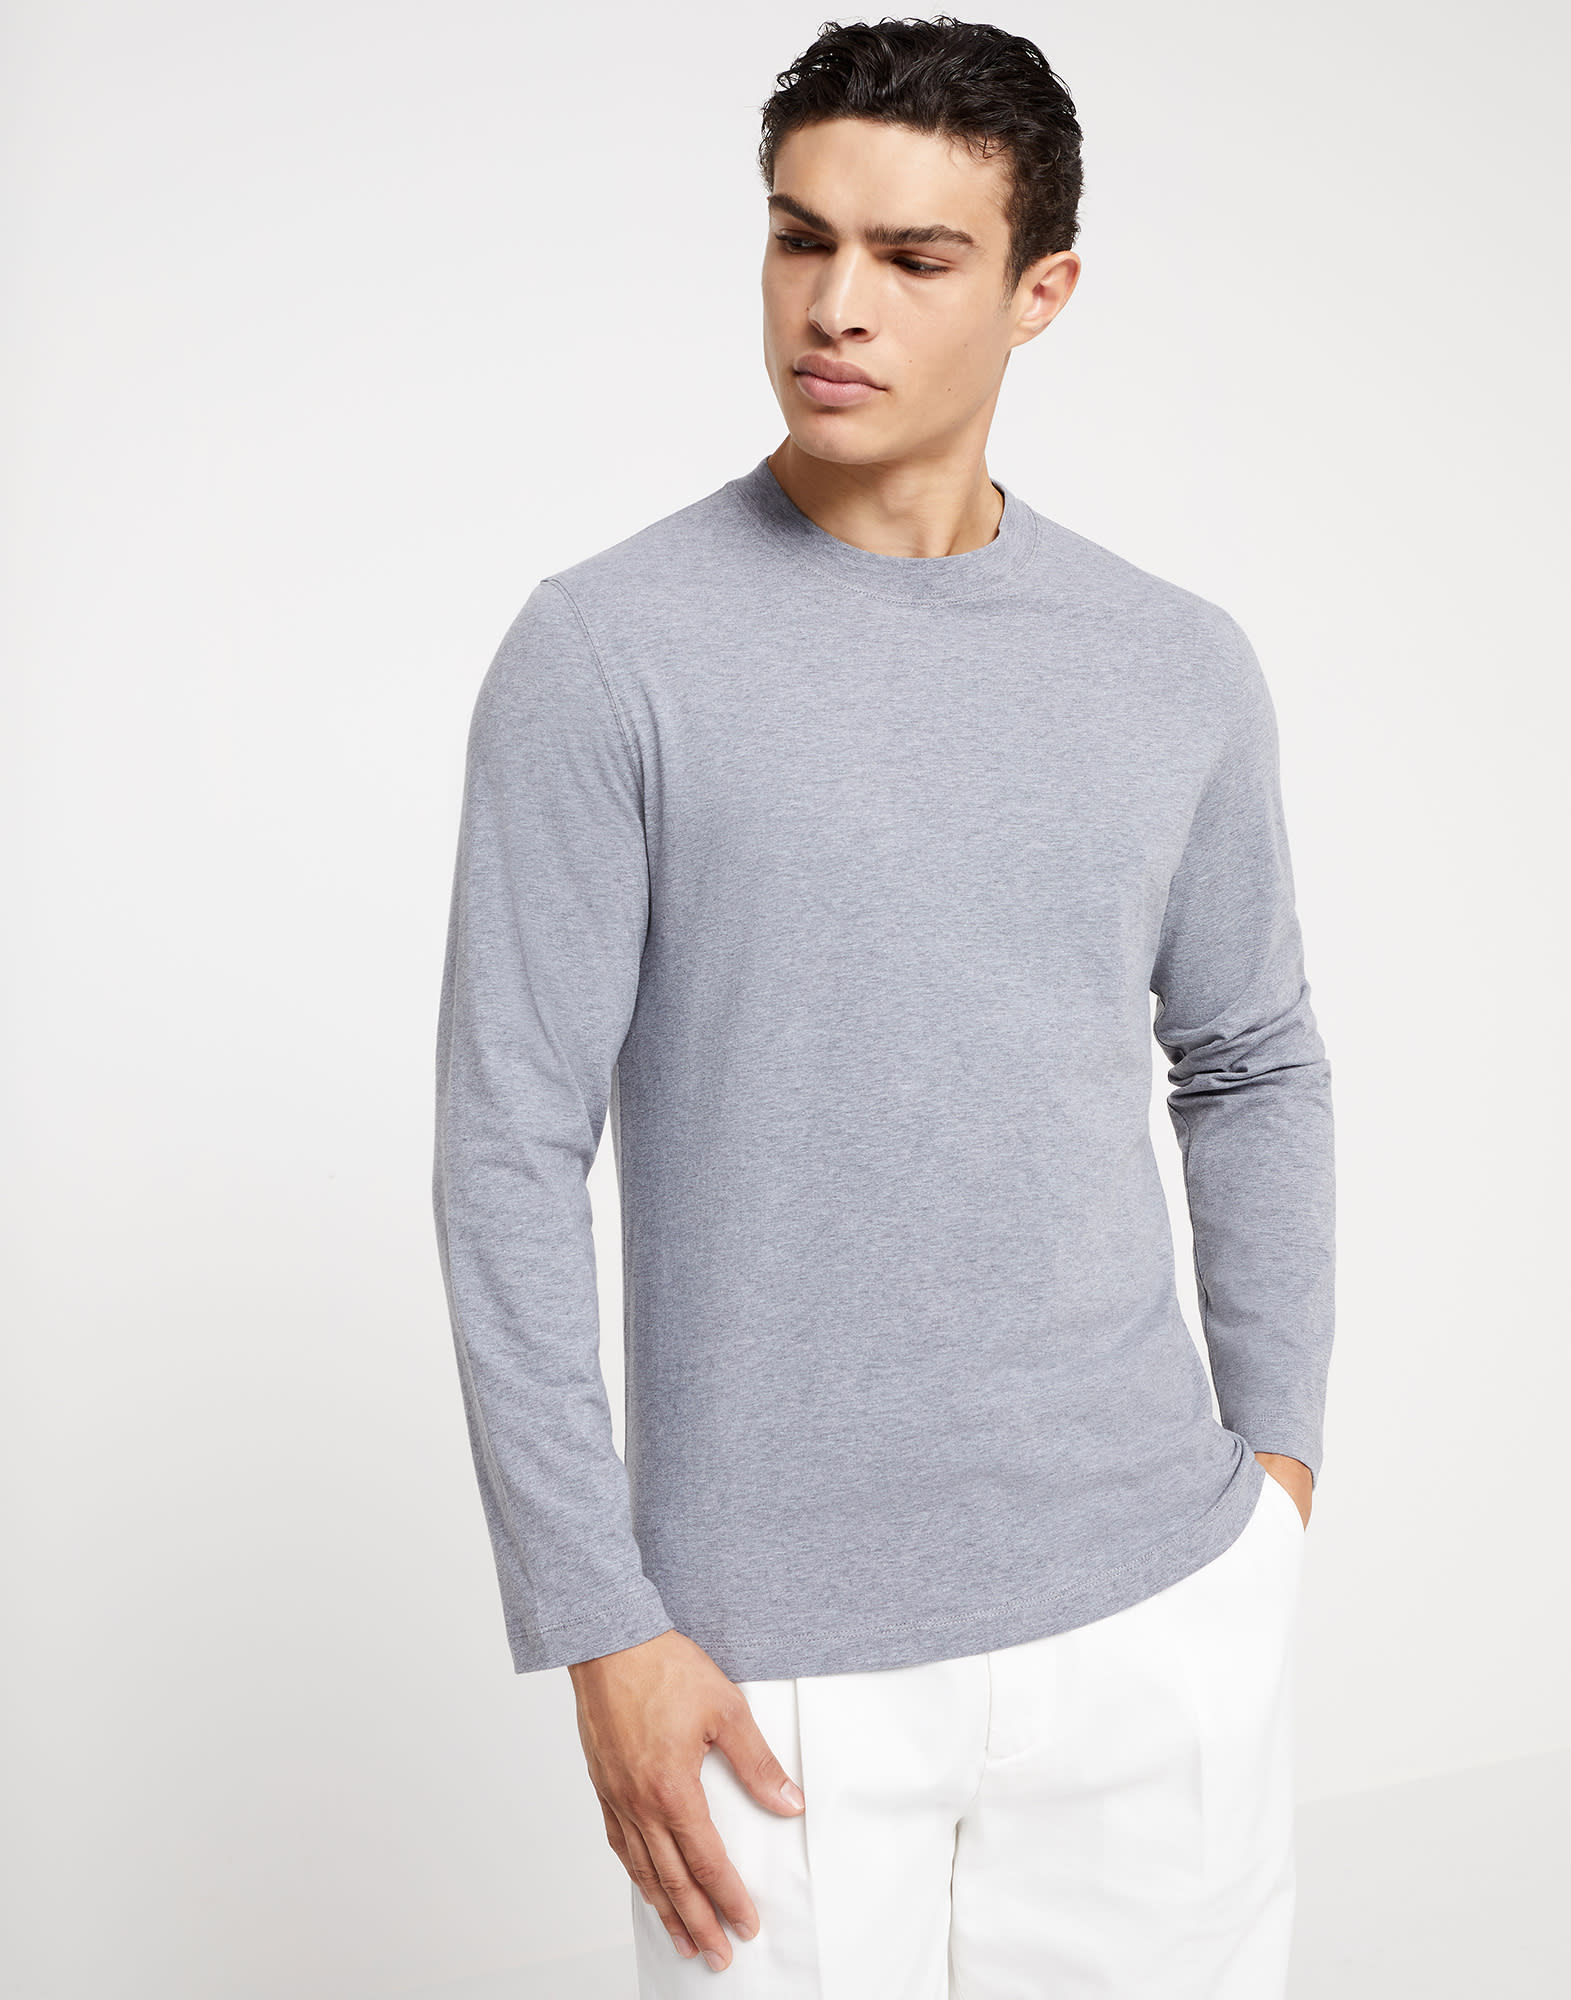 Long sleeve T-shirt Grey Man -
                        Brunello Cucinelli
                    